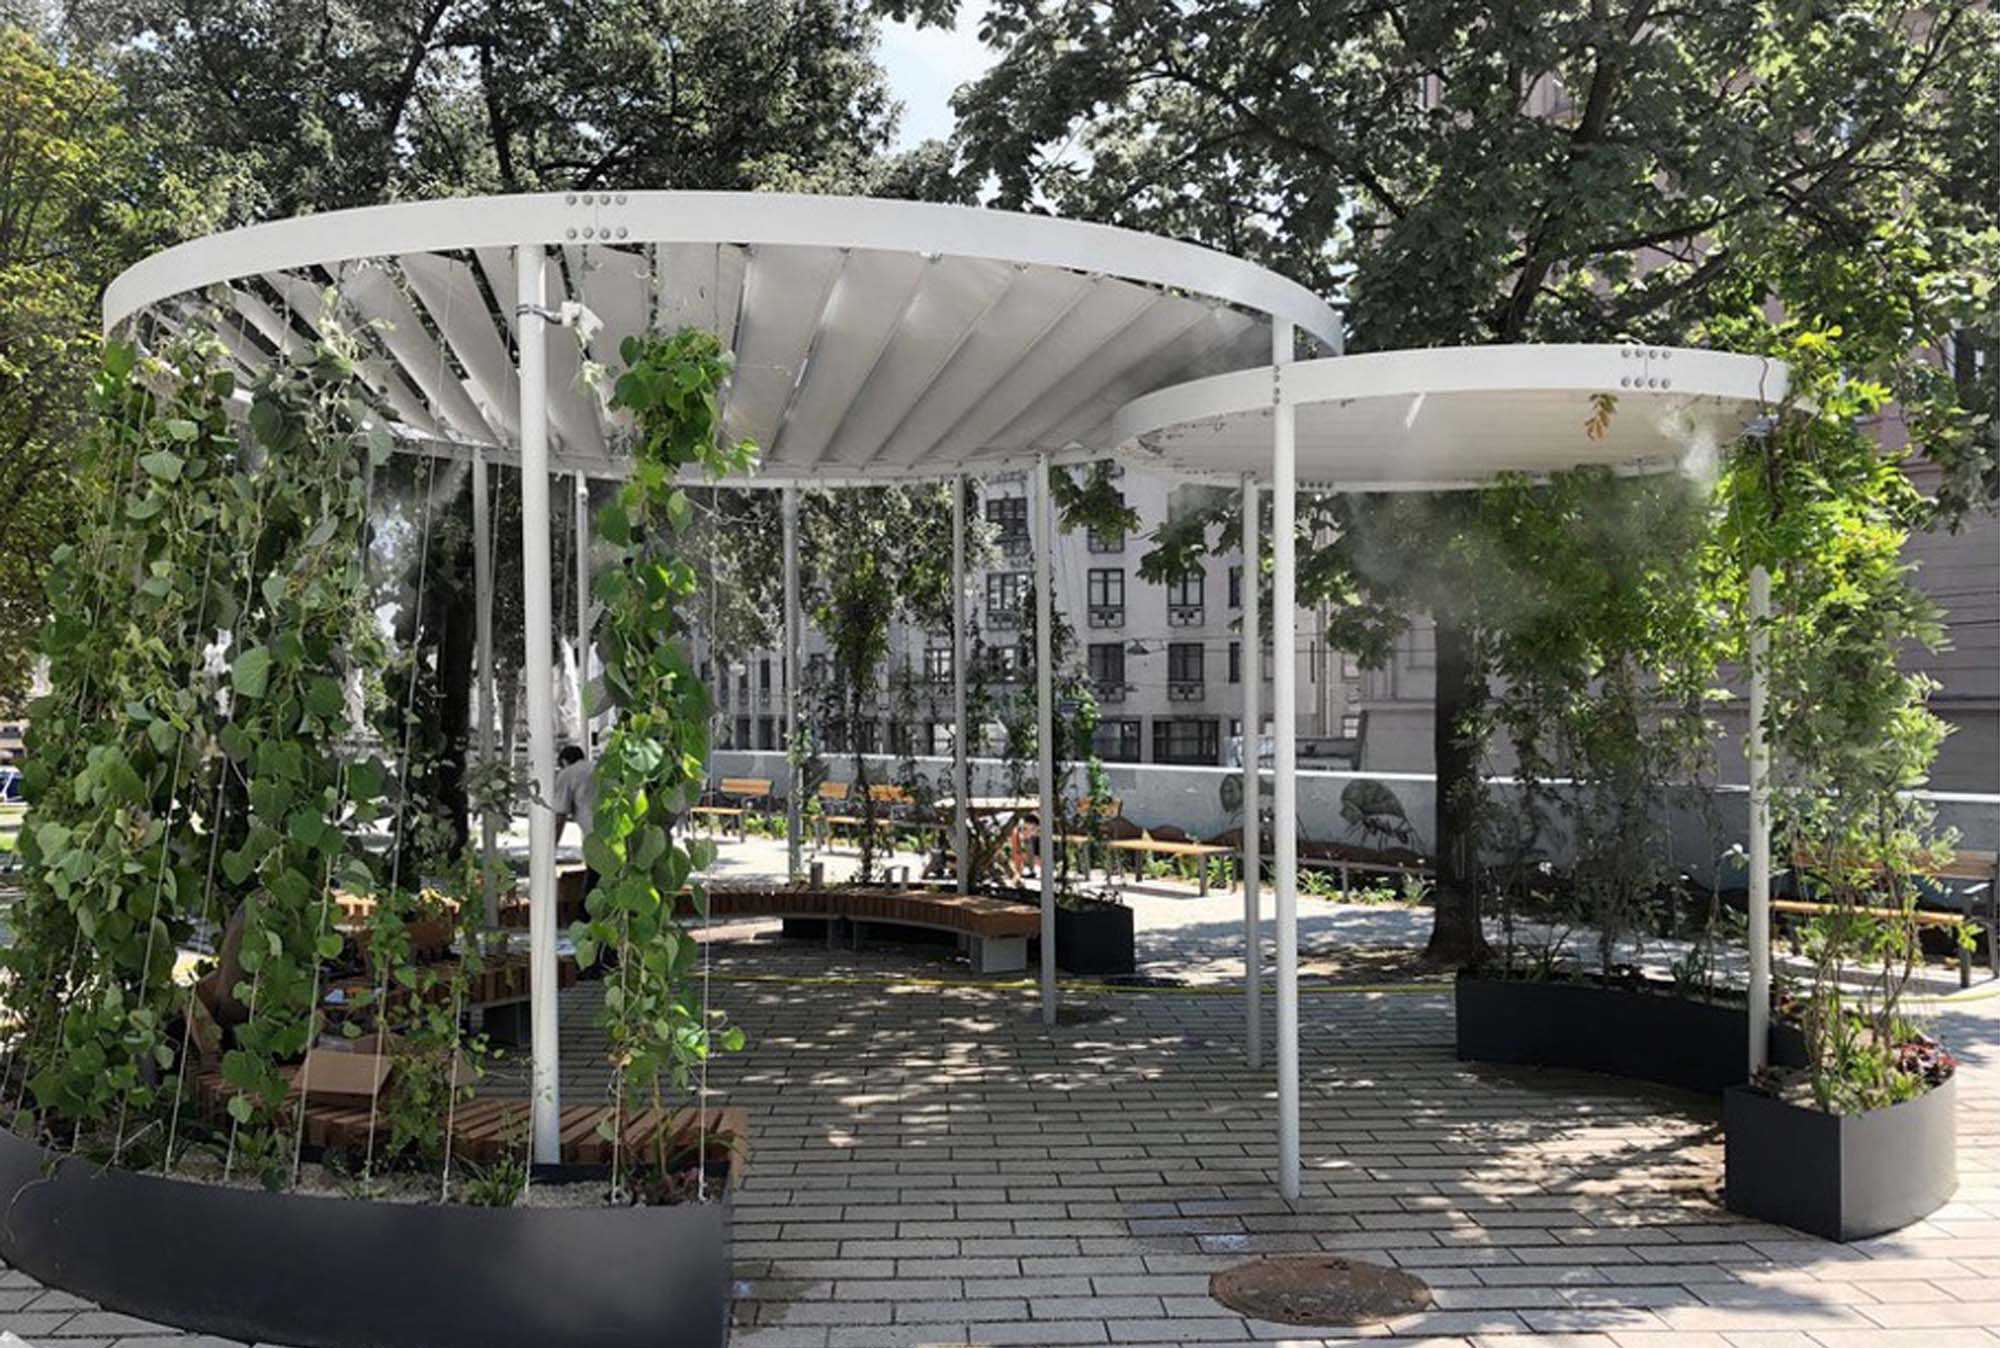 NiG Sonderförderung „Klimagrüne Orts- & Begegnungszentren in NÖ Gemeinden“ - Umgebungskühler in einem Park